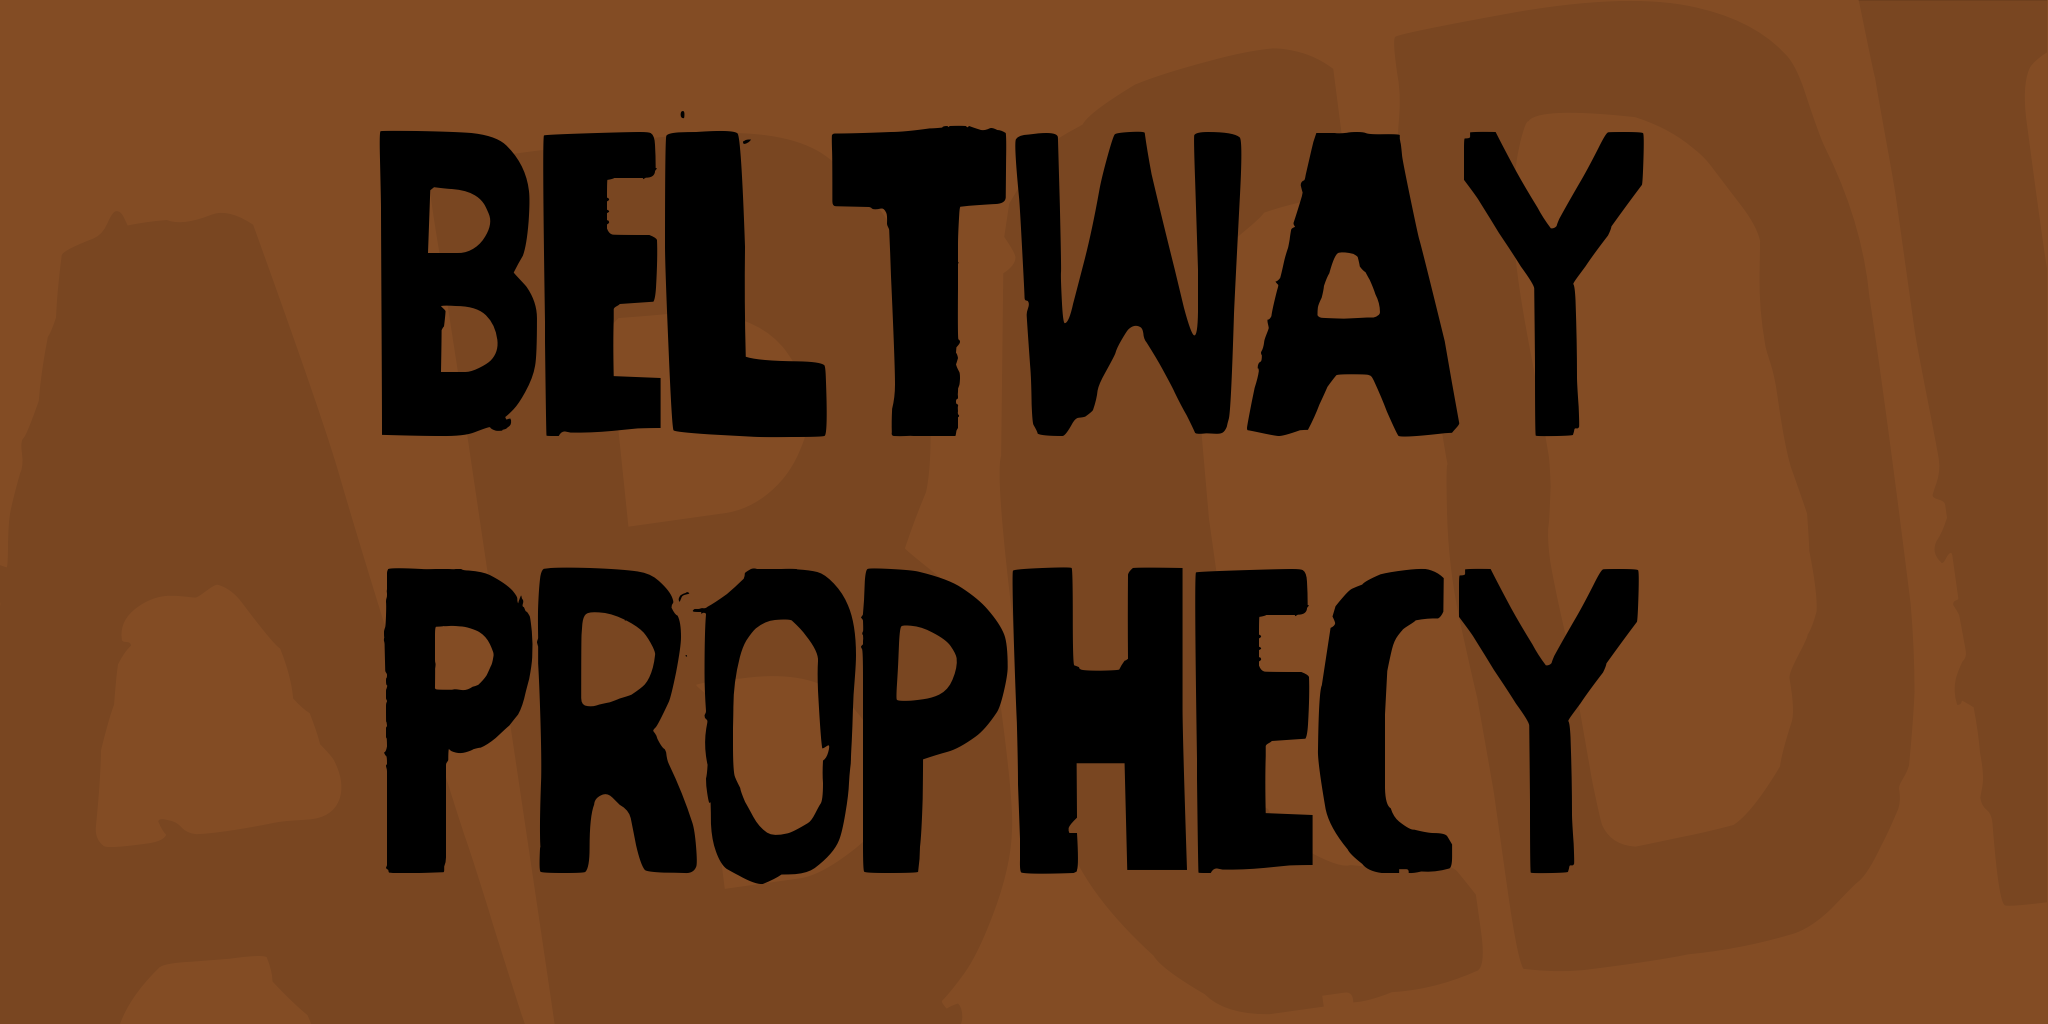 Beltway Prophecy